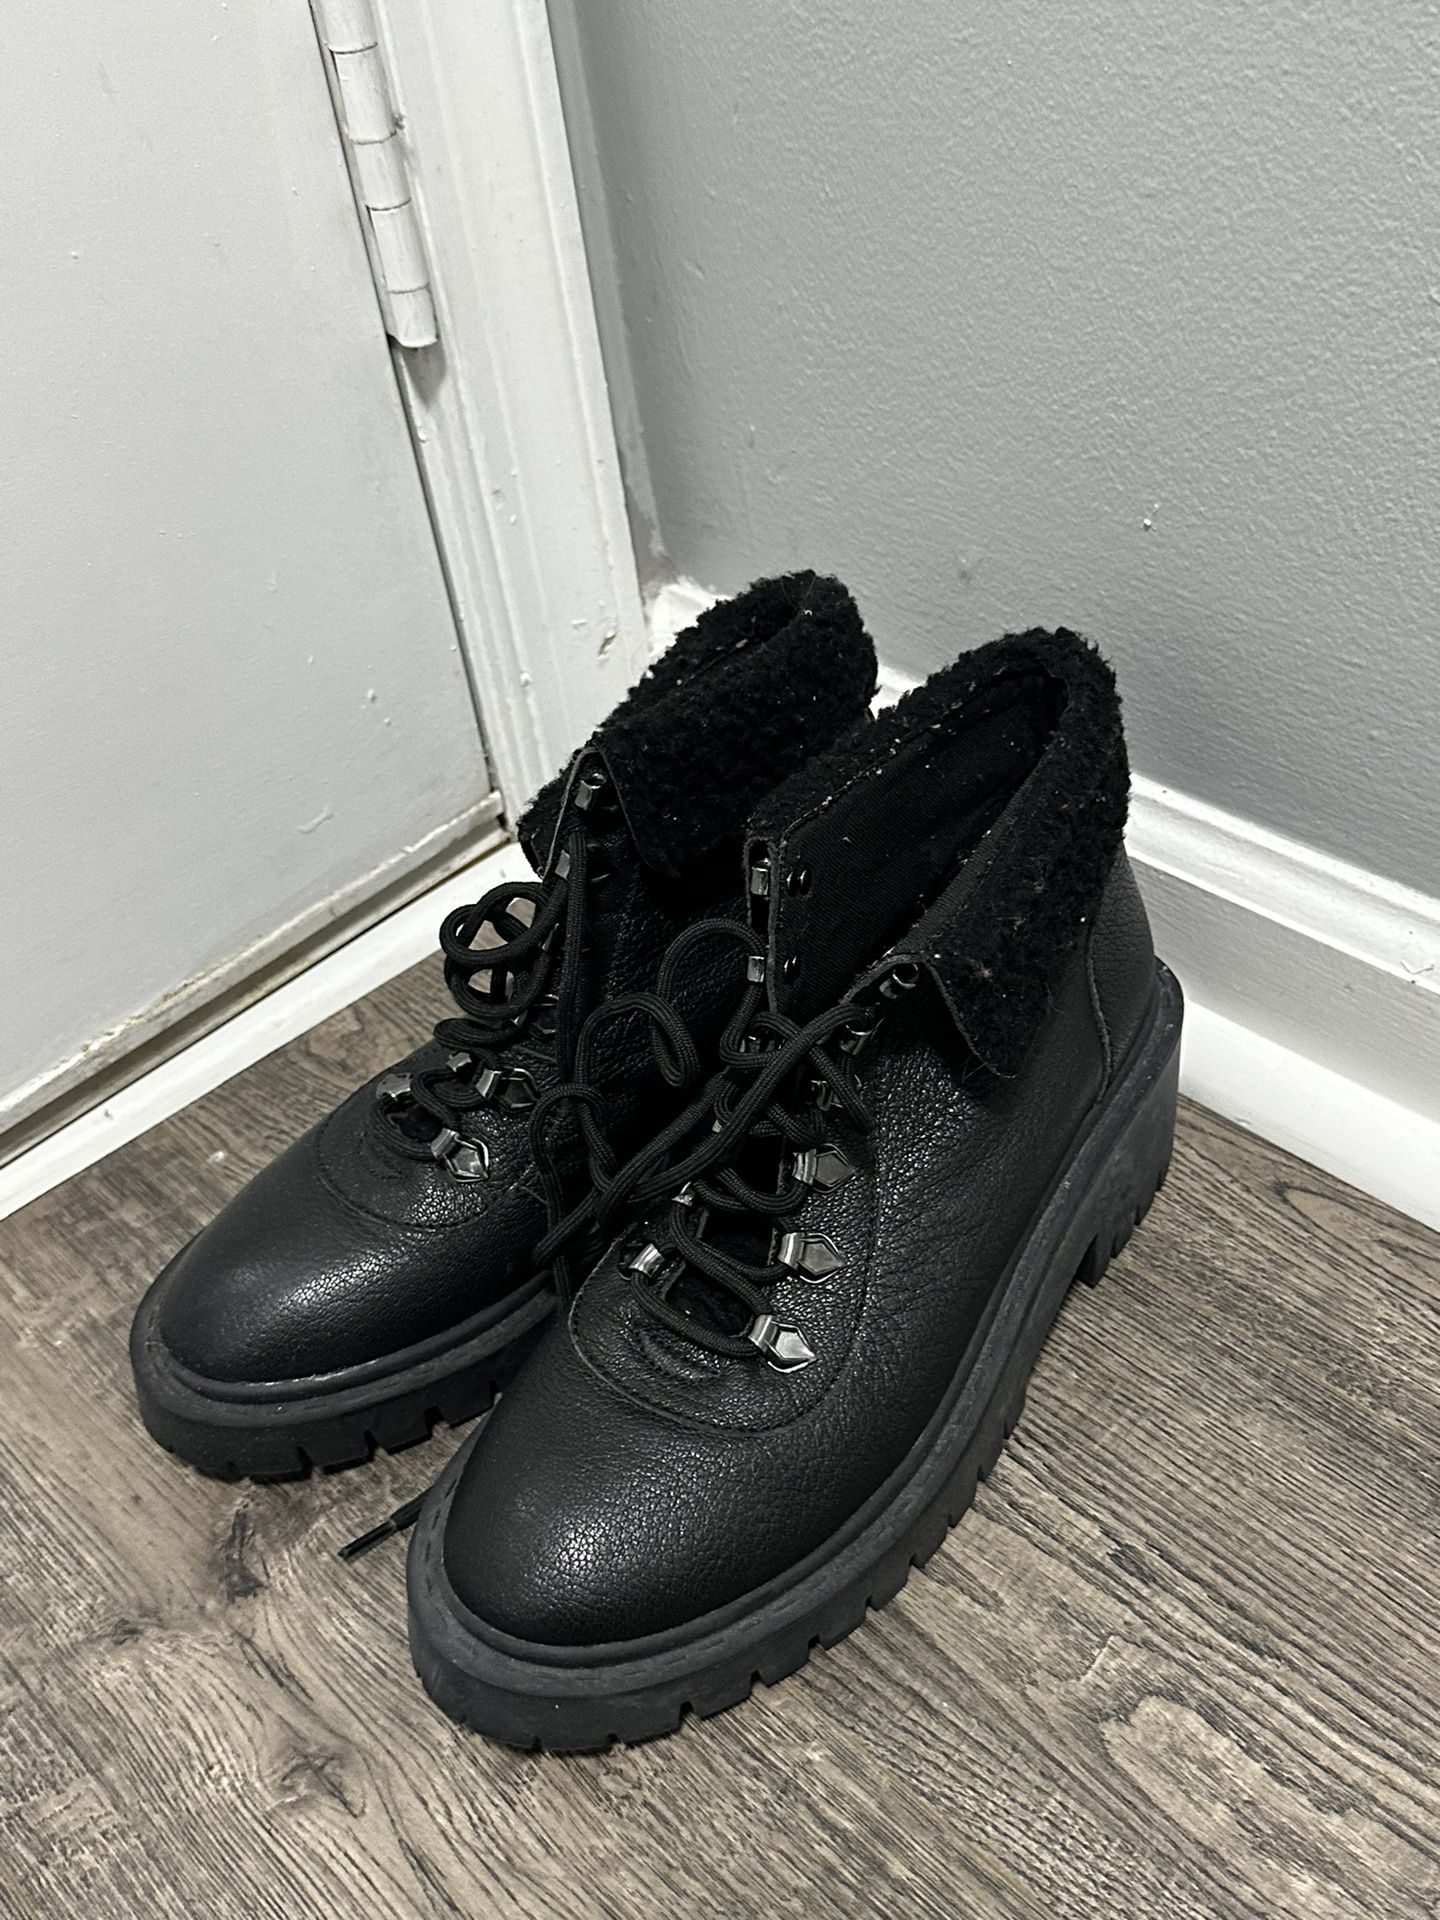 Women’s Black boots Size 9